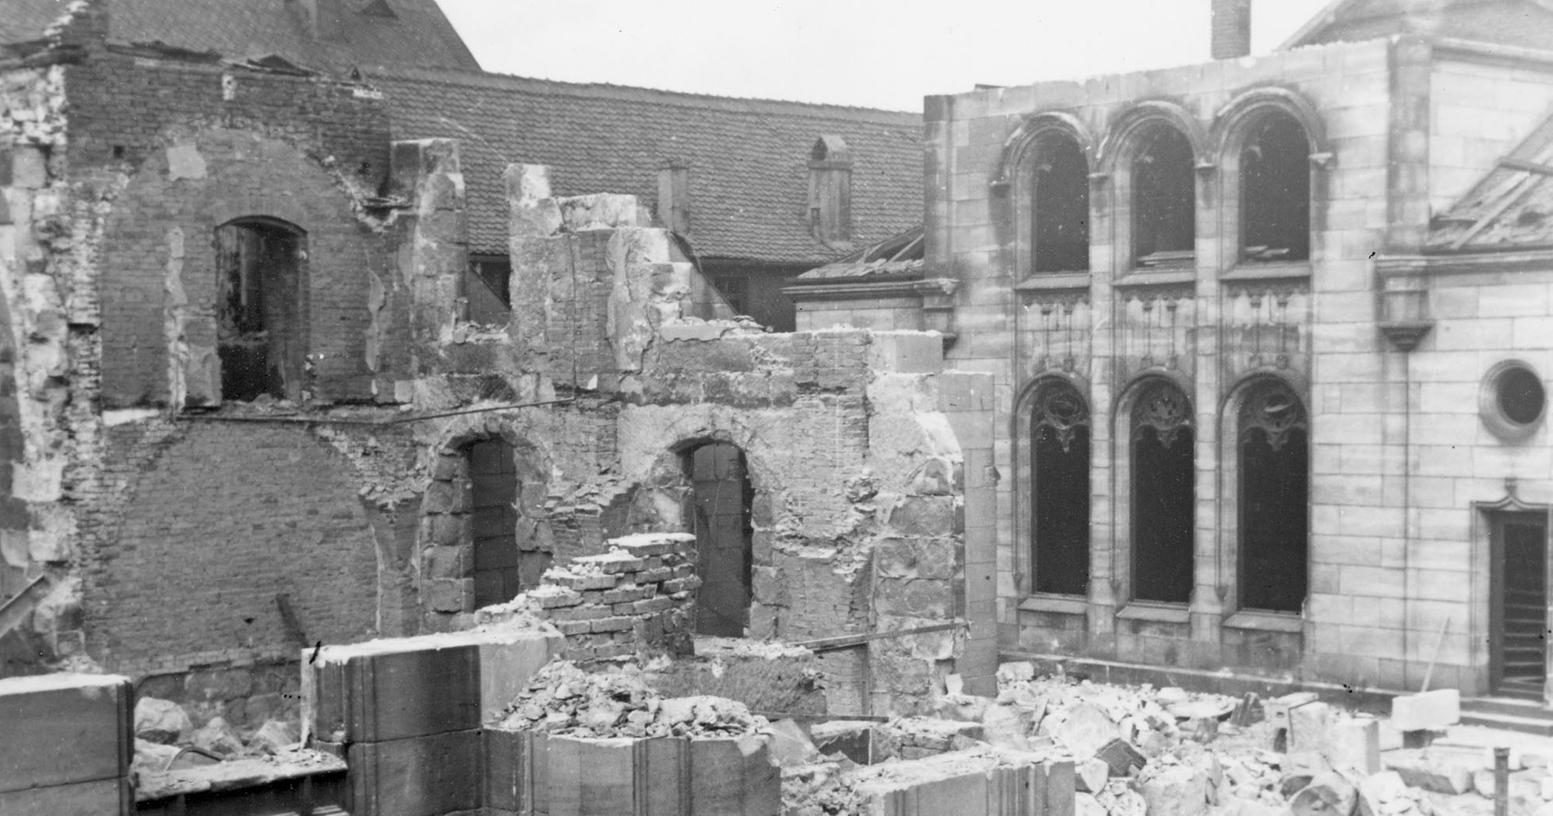 Dutzende Synagogen wurden in der Reichspogromnacht geschändet und zerstört - so auch in Fürth. Am Samstag erinnern zahlreiche Gedenkfeiern in der Region an die Verbrechen der Nationalsozialisten.